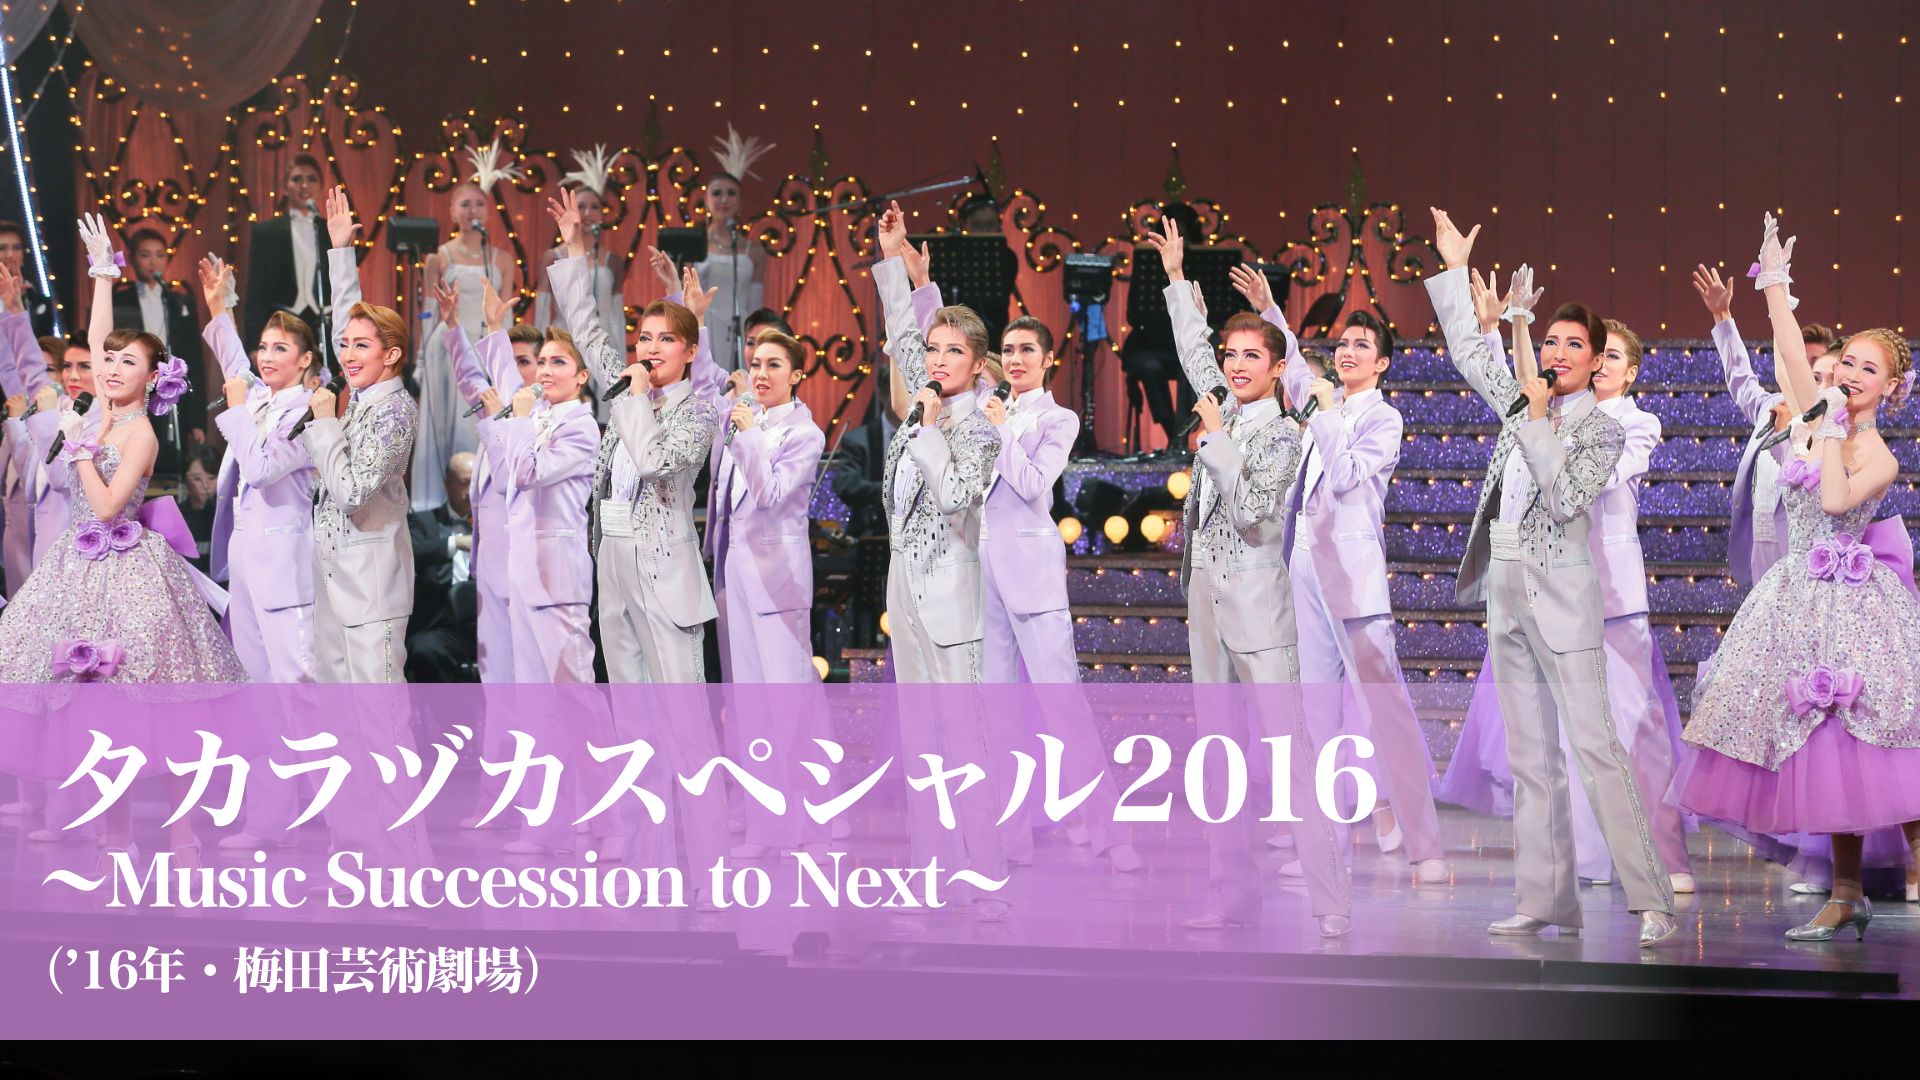 タカラヅカスペシャル2016 〜Music Succession to Next〜